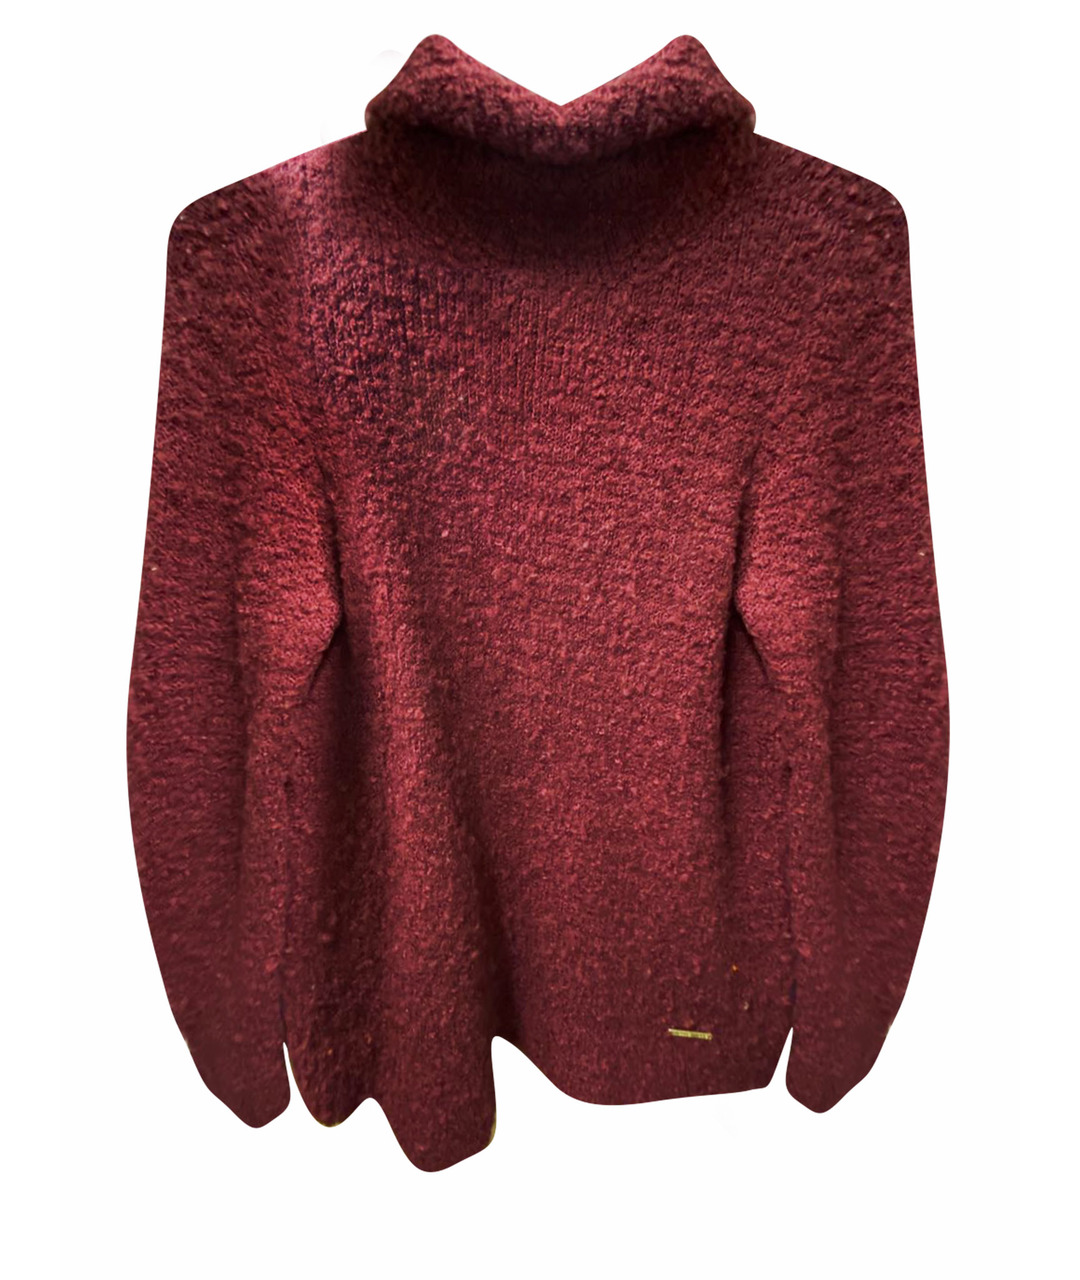 MICHAEL KORS Бордовый джемпер / свитер, фото 1